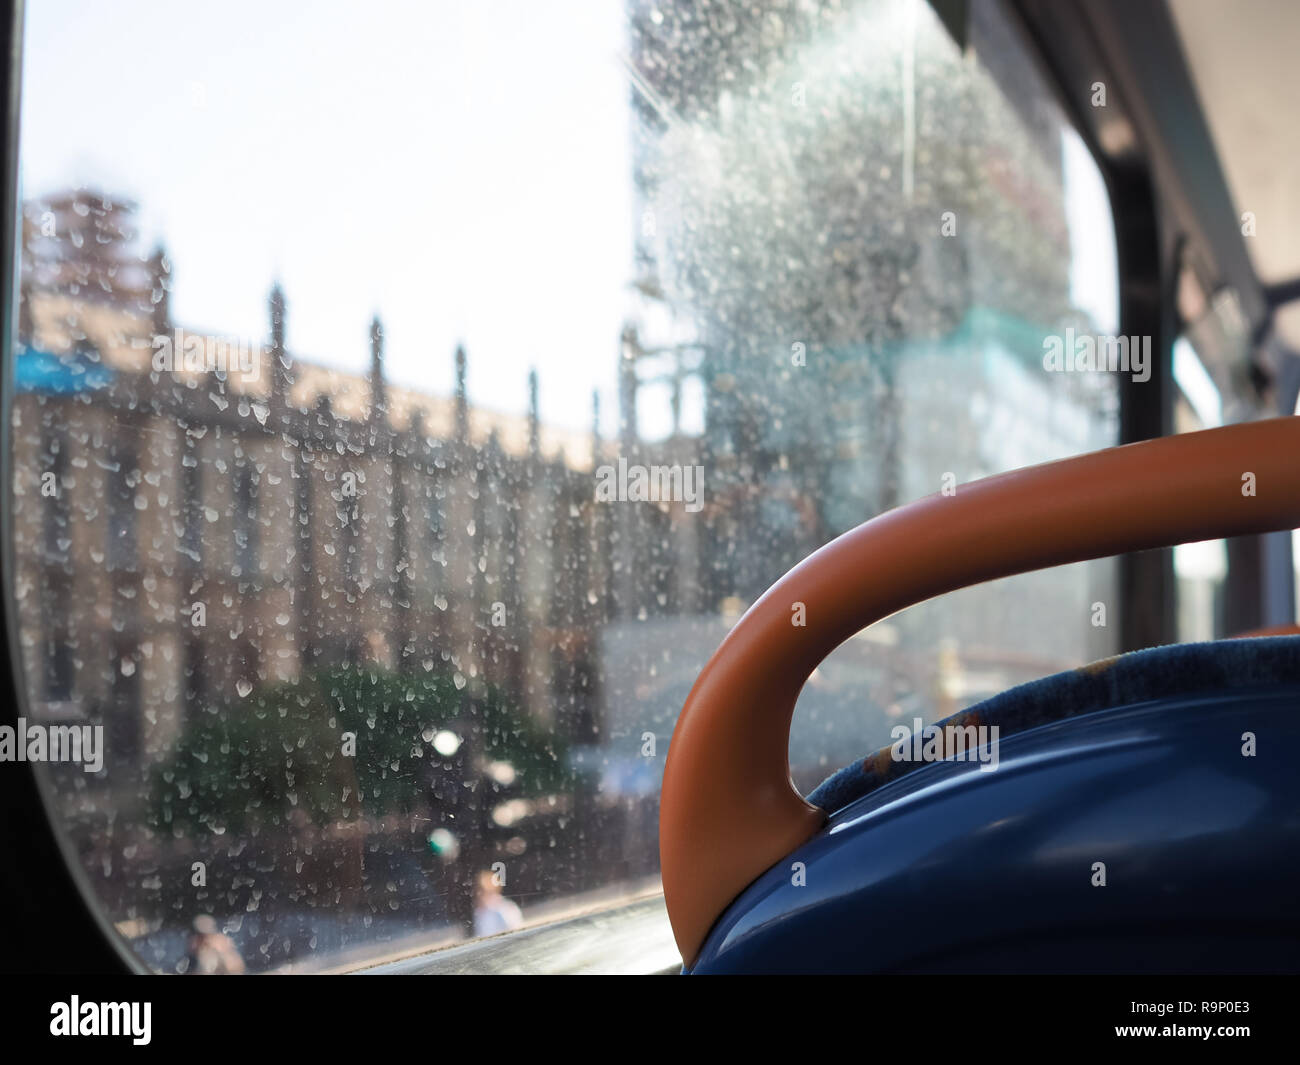 L'eau sale de marques sur une fenêtre de l'autobus à Londres Banque D'Images